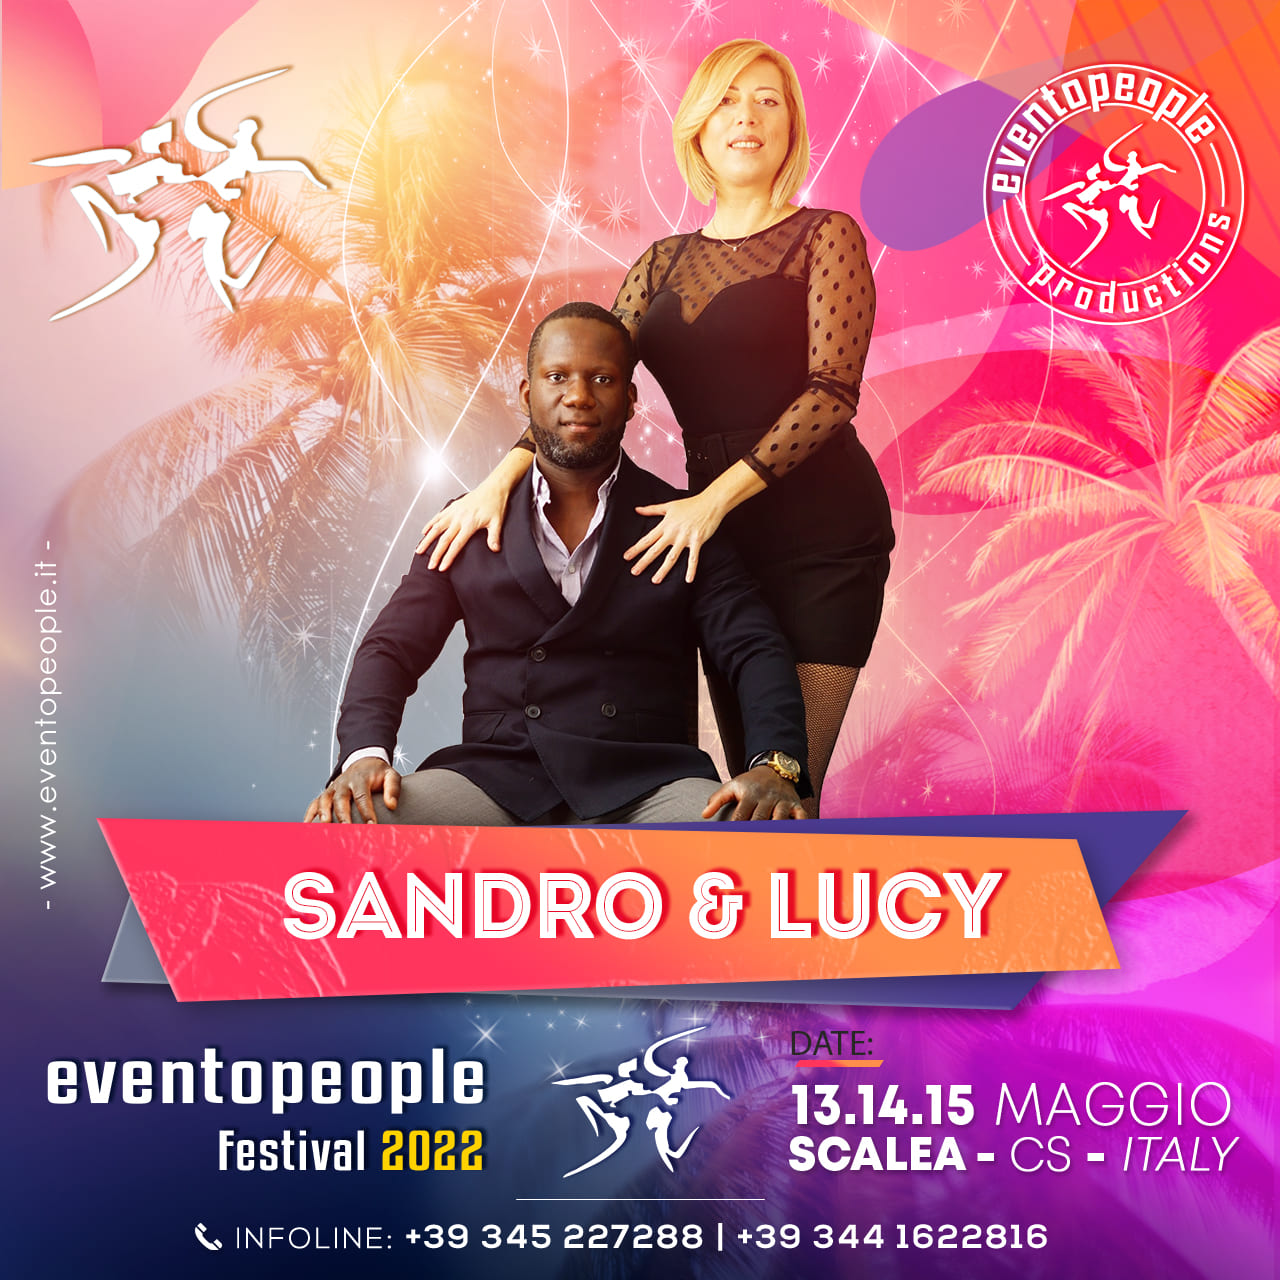 Sandro & Lucy